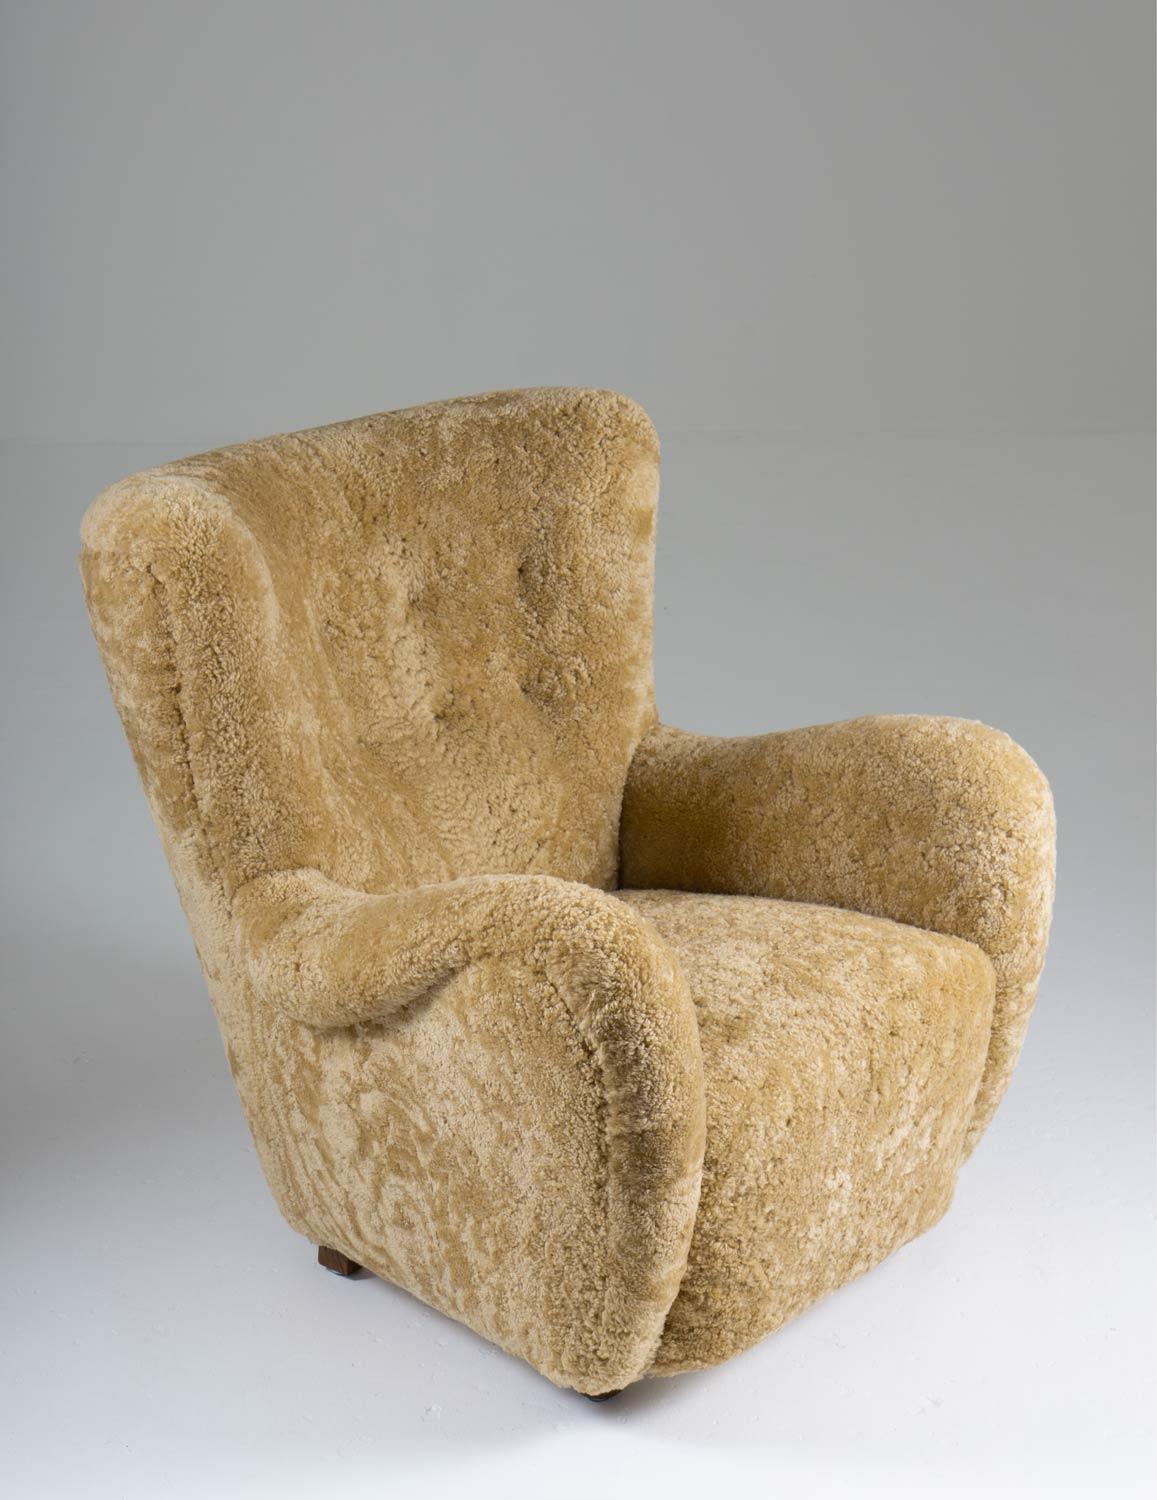 Hochlehniger Sessel, hergestellt in Dänemark um 1940. 

Dieser majestätische Stuhl umgibt Sie mit seiner geschwungenen Rückenlehne und ist genauso bequem wie er aussieht. 
Er wurde mit honigfarbenem Schafsleder und cognacfarbenen Lederknöpfen neu